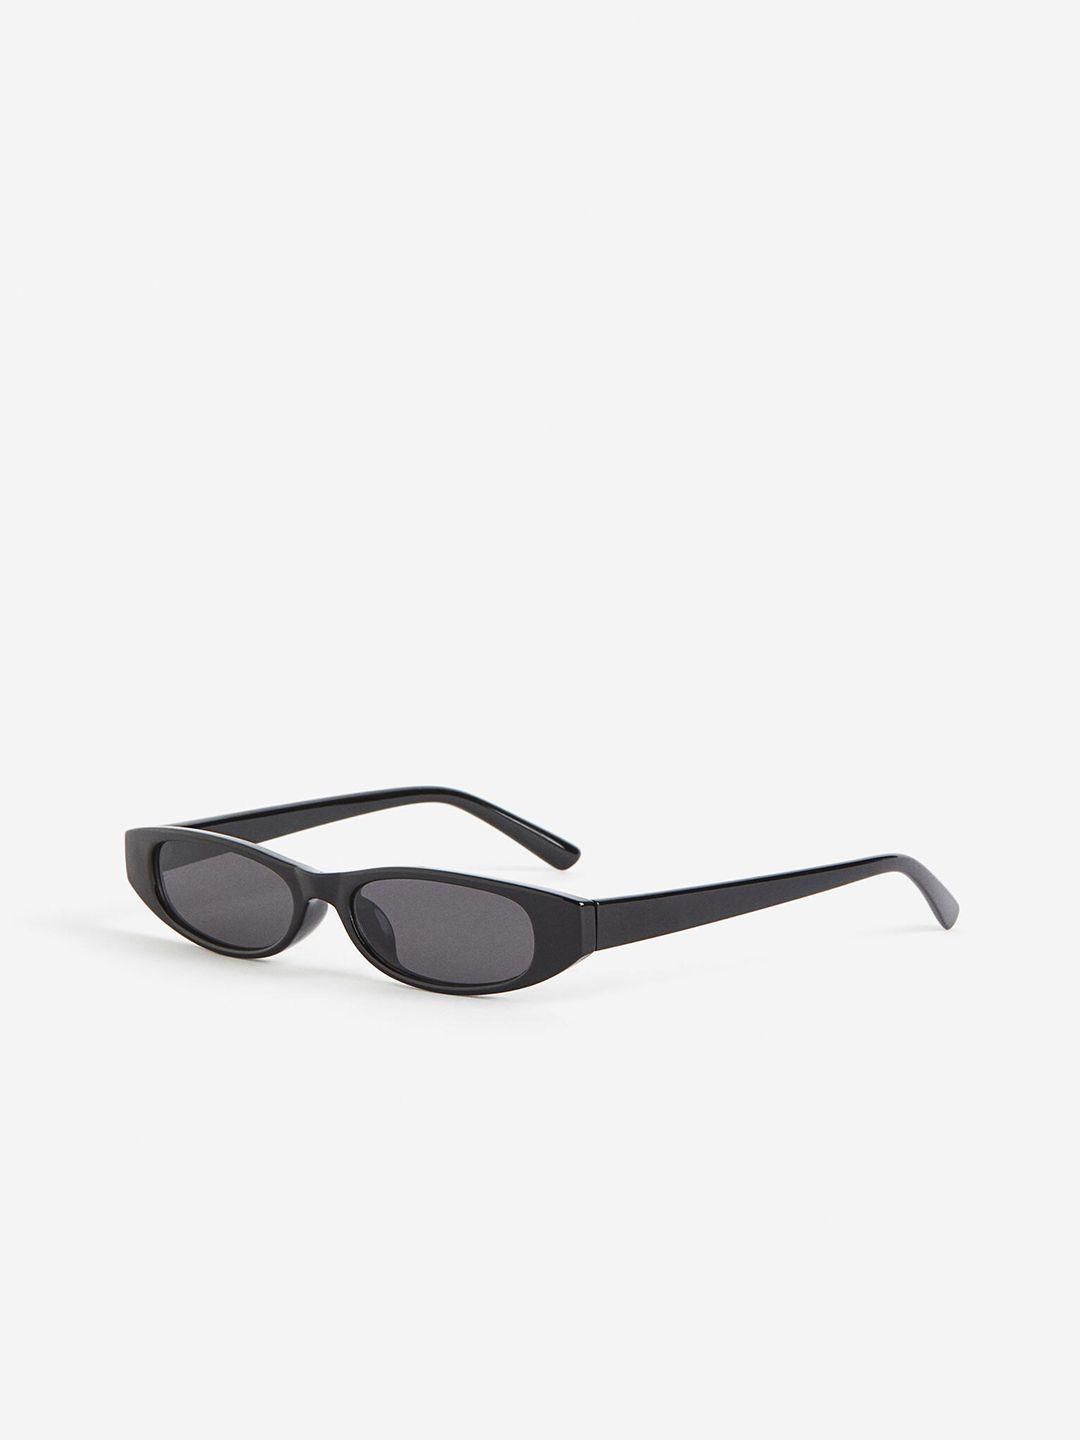 h&m women rectangular sunglasses